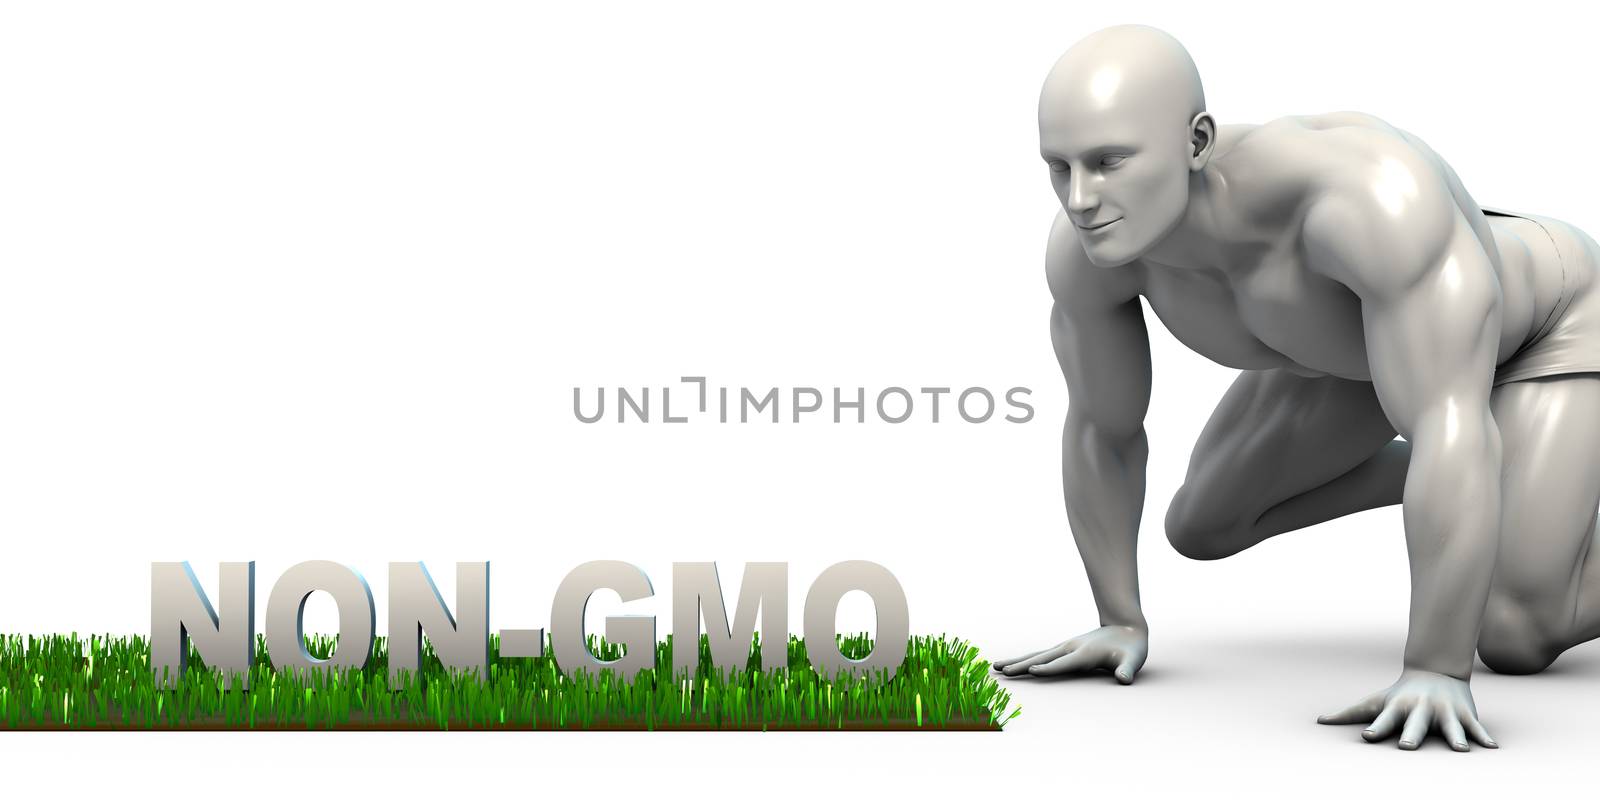 Non GMO by kentoh